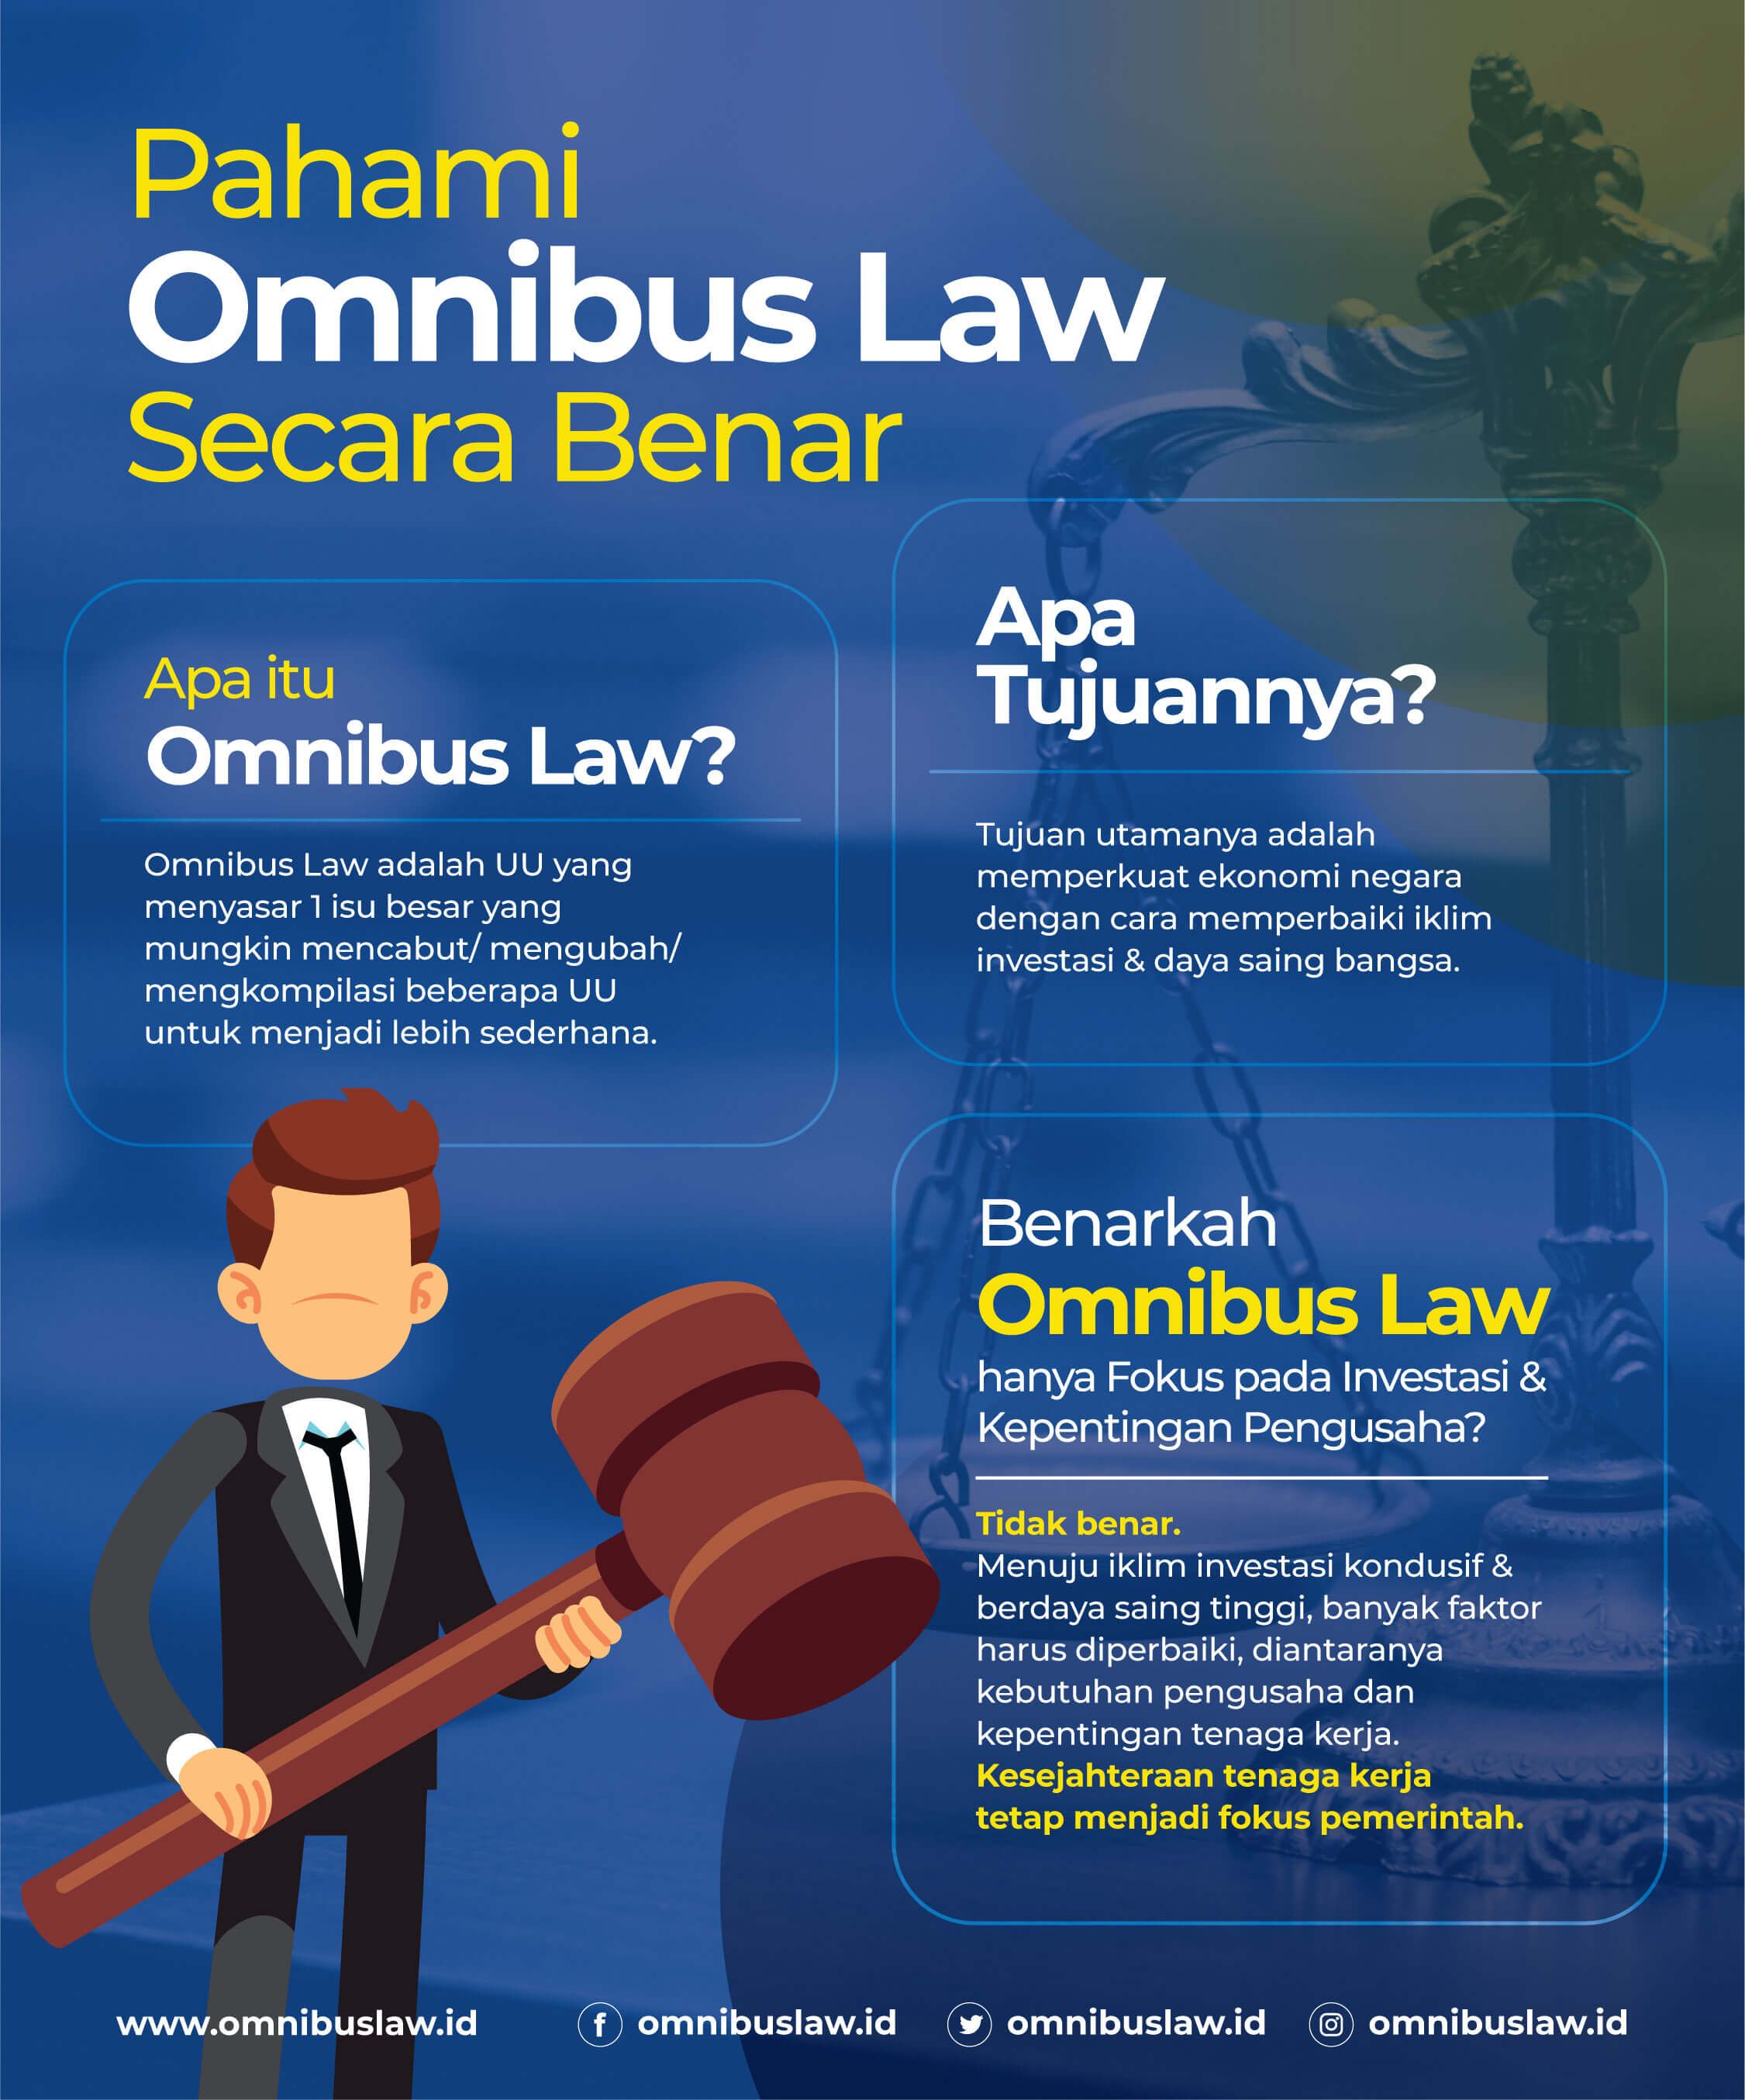 Daftar Keuntungan Omnibus Law, Ditentang Habis-habisan, 